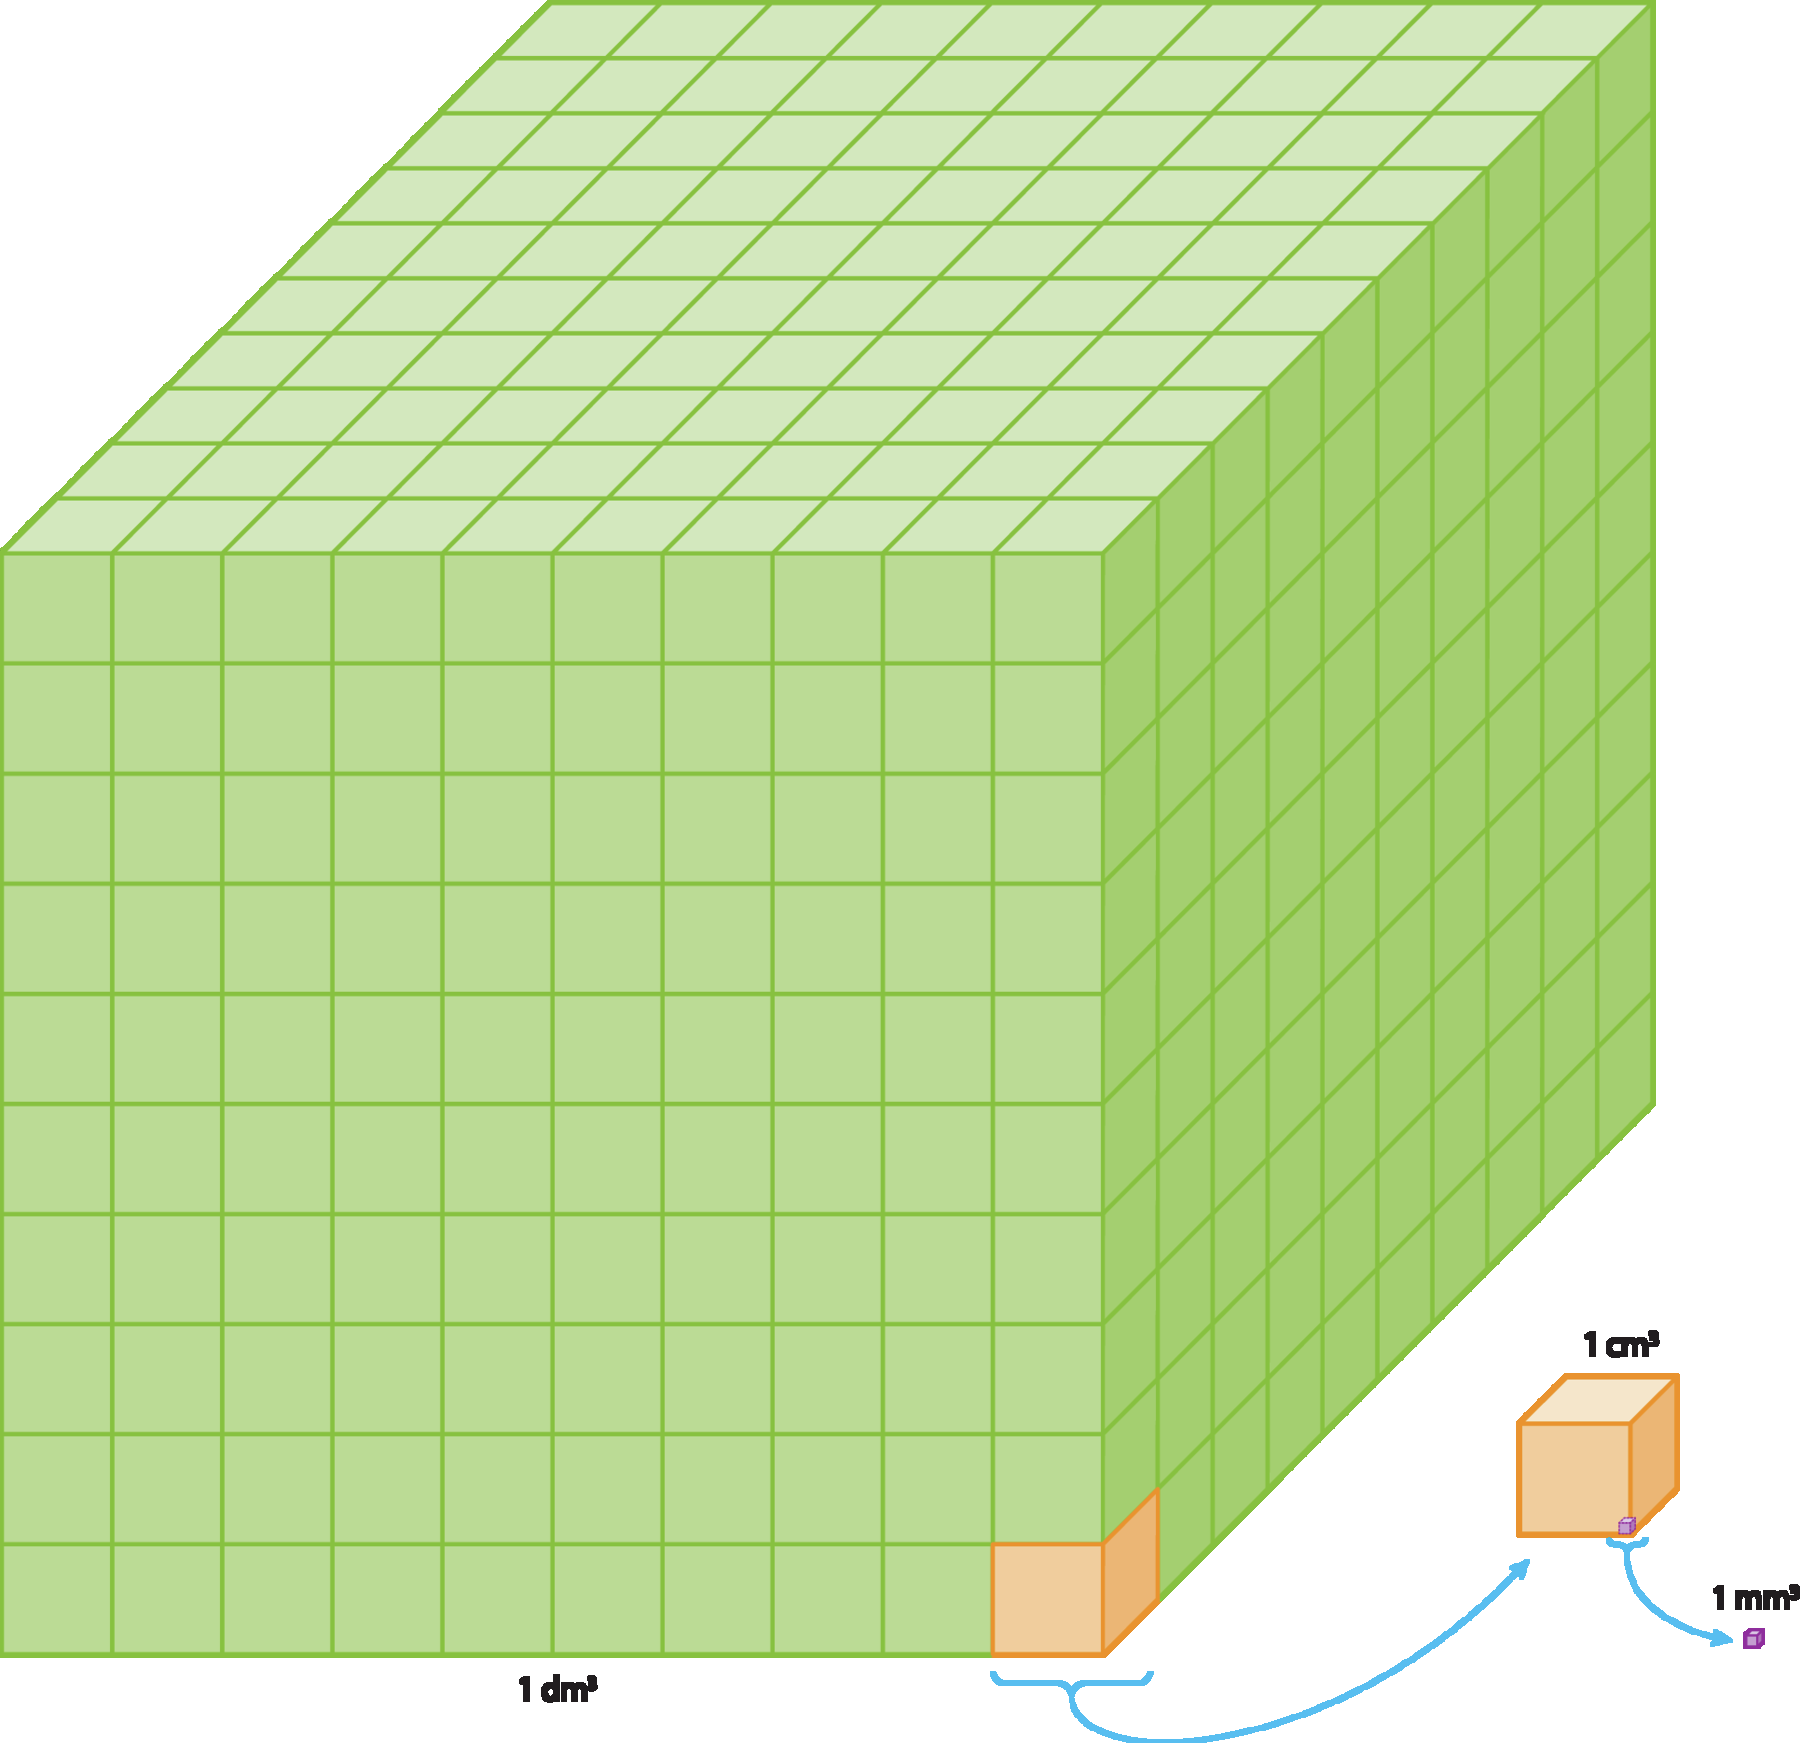 Ilustração. Cubo grande e verde com volume medindo 1 decímetro cúbico, dividido em mil cubos pequenos. Cada cubo pequeno tem volume de 1 centímetro cúbico. Uma flecha azul indica um desses cubos pequenos separados com destaque em laranja, e nele há um destaque em roxo para um cubinho com volume medindo 1 milímetro cúbico.